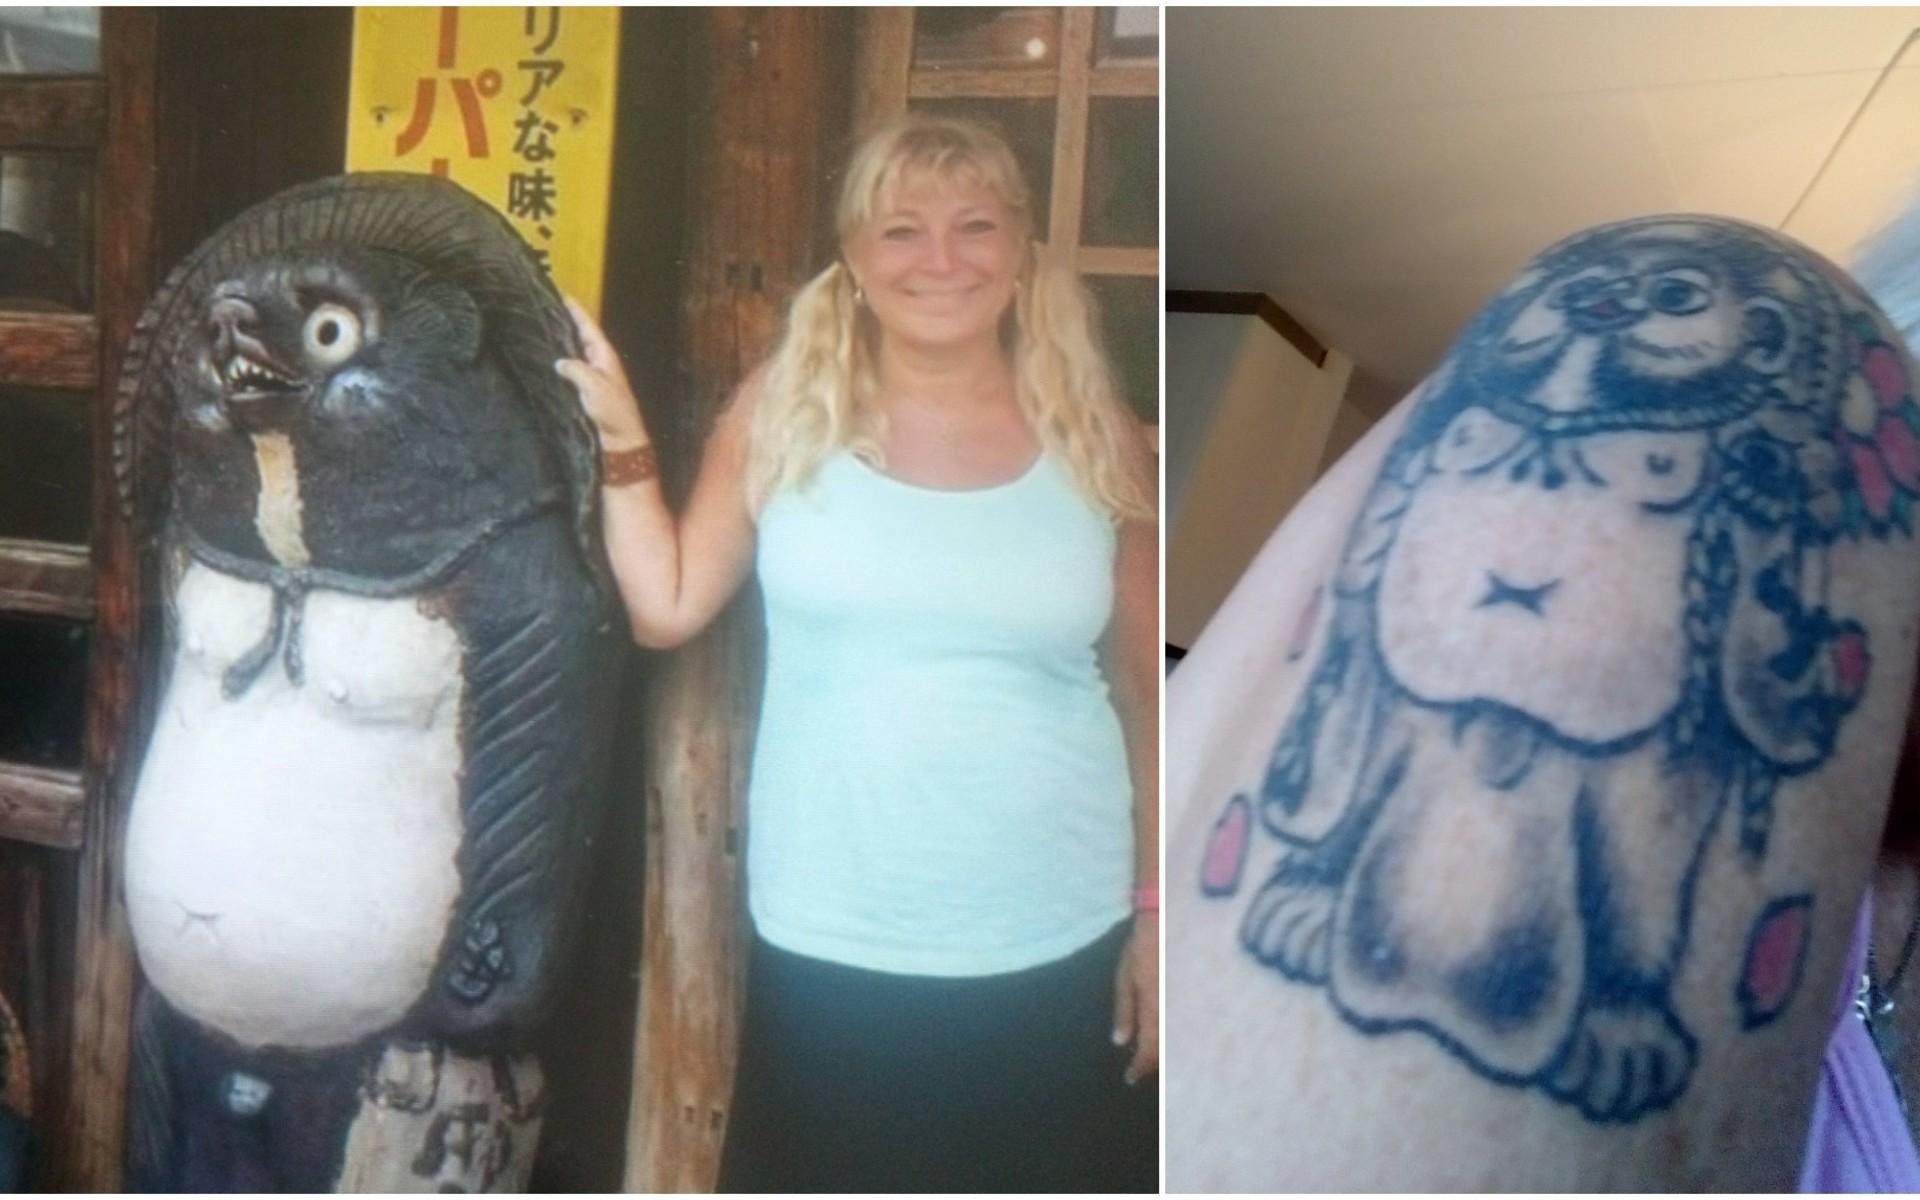 Maria Degerström väntade med att göra sin första tatuering tills hon fyllde 50 år. ”Han heter Tanuki och är en japansk mårdhund. En gång i tiden var han ganska elak nu har han blivit lite snällare i sagorna. Han flyger med sina stora pung kulor. Han brukar stå utanför barer i Japan.”